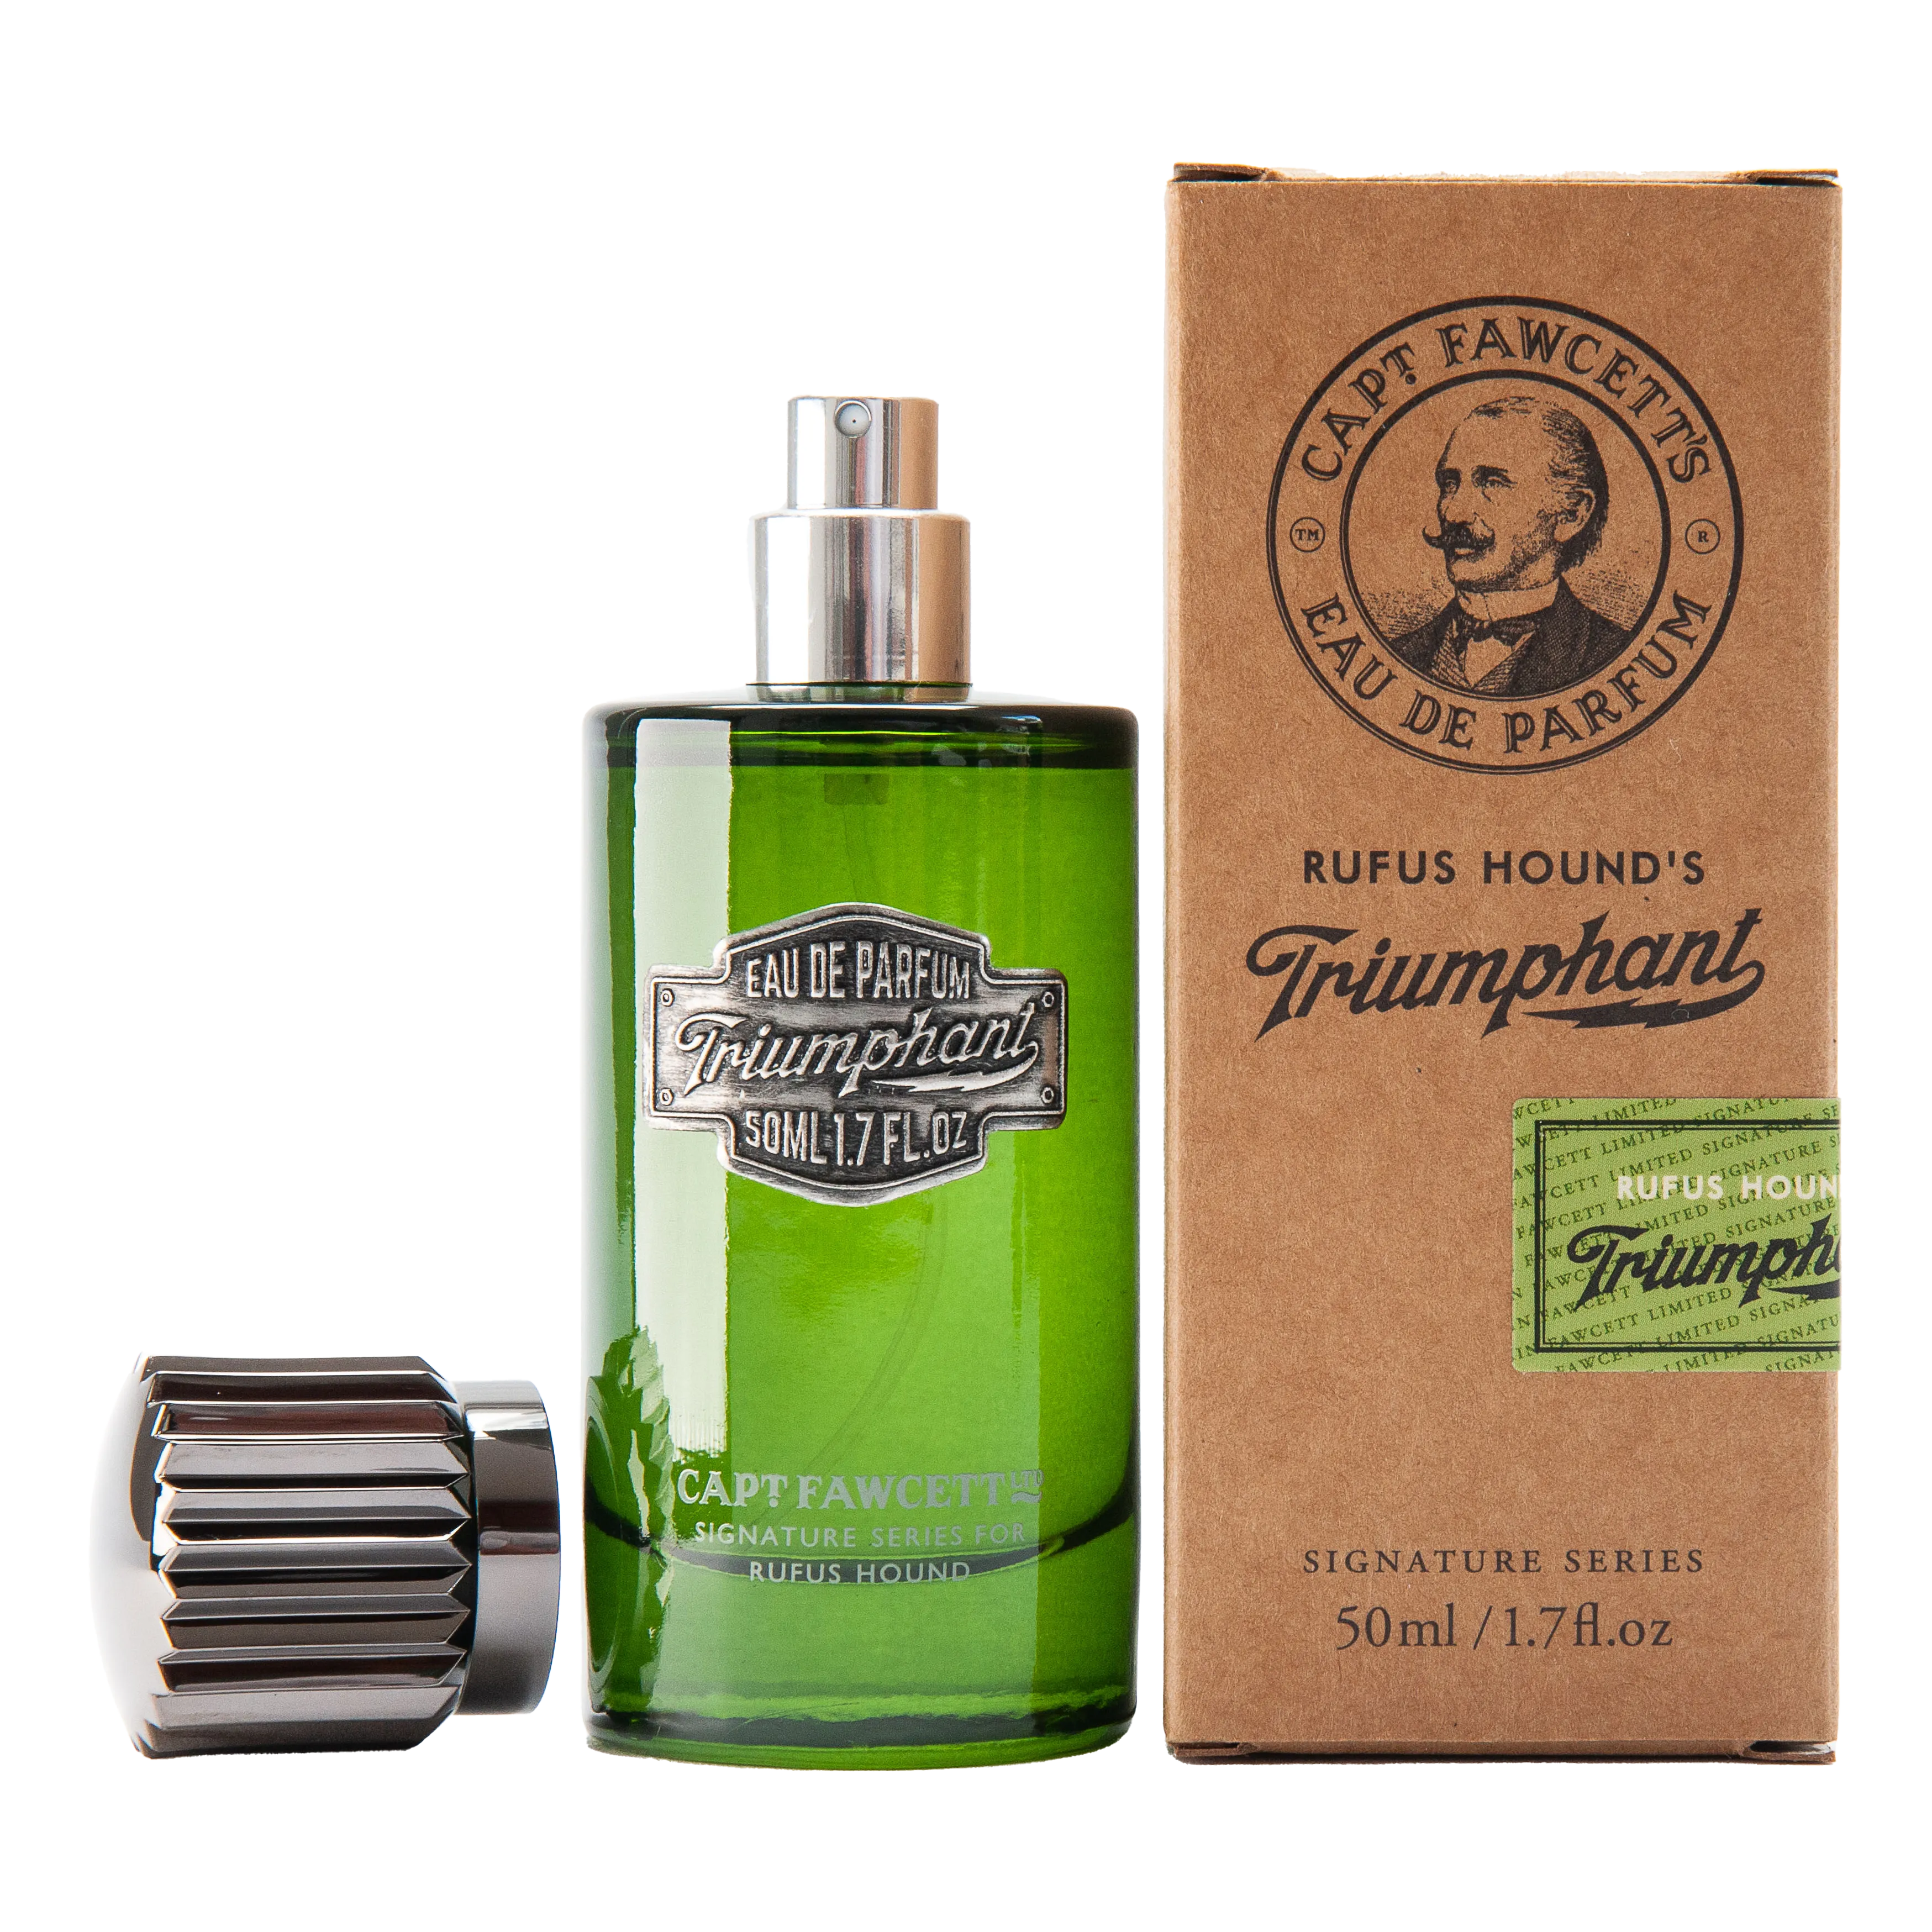 Captain Fawcett's Triumphant Eau de Parfum parfyme 